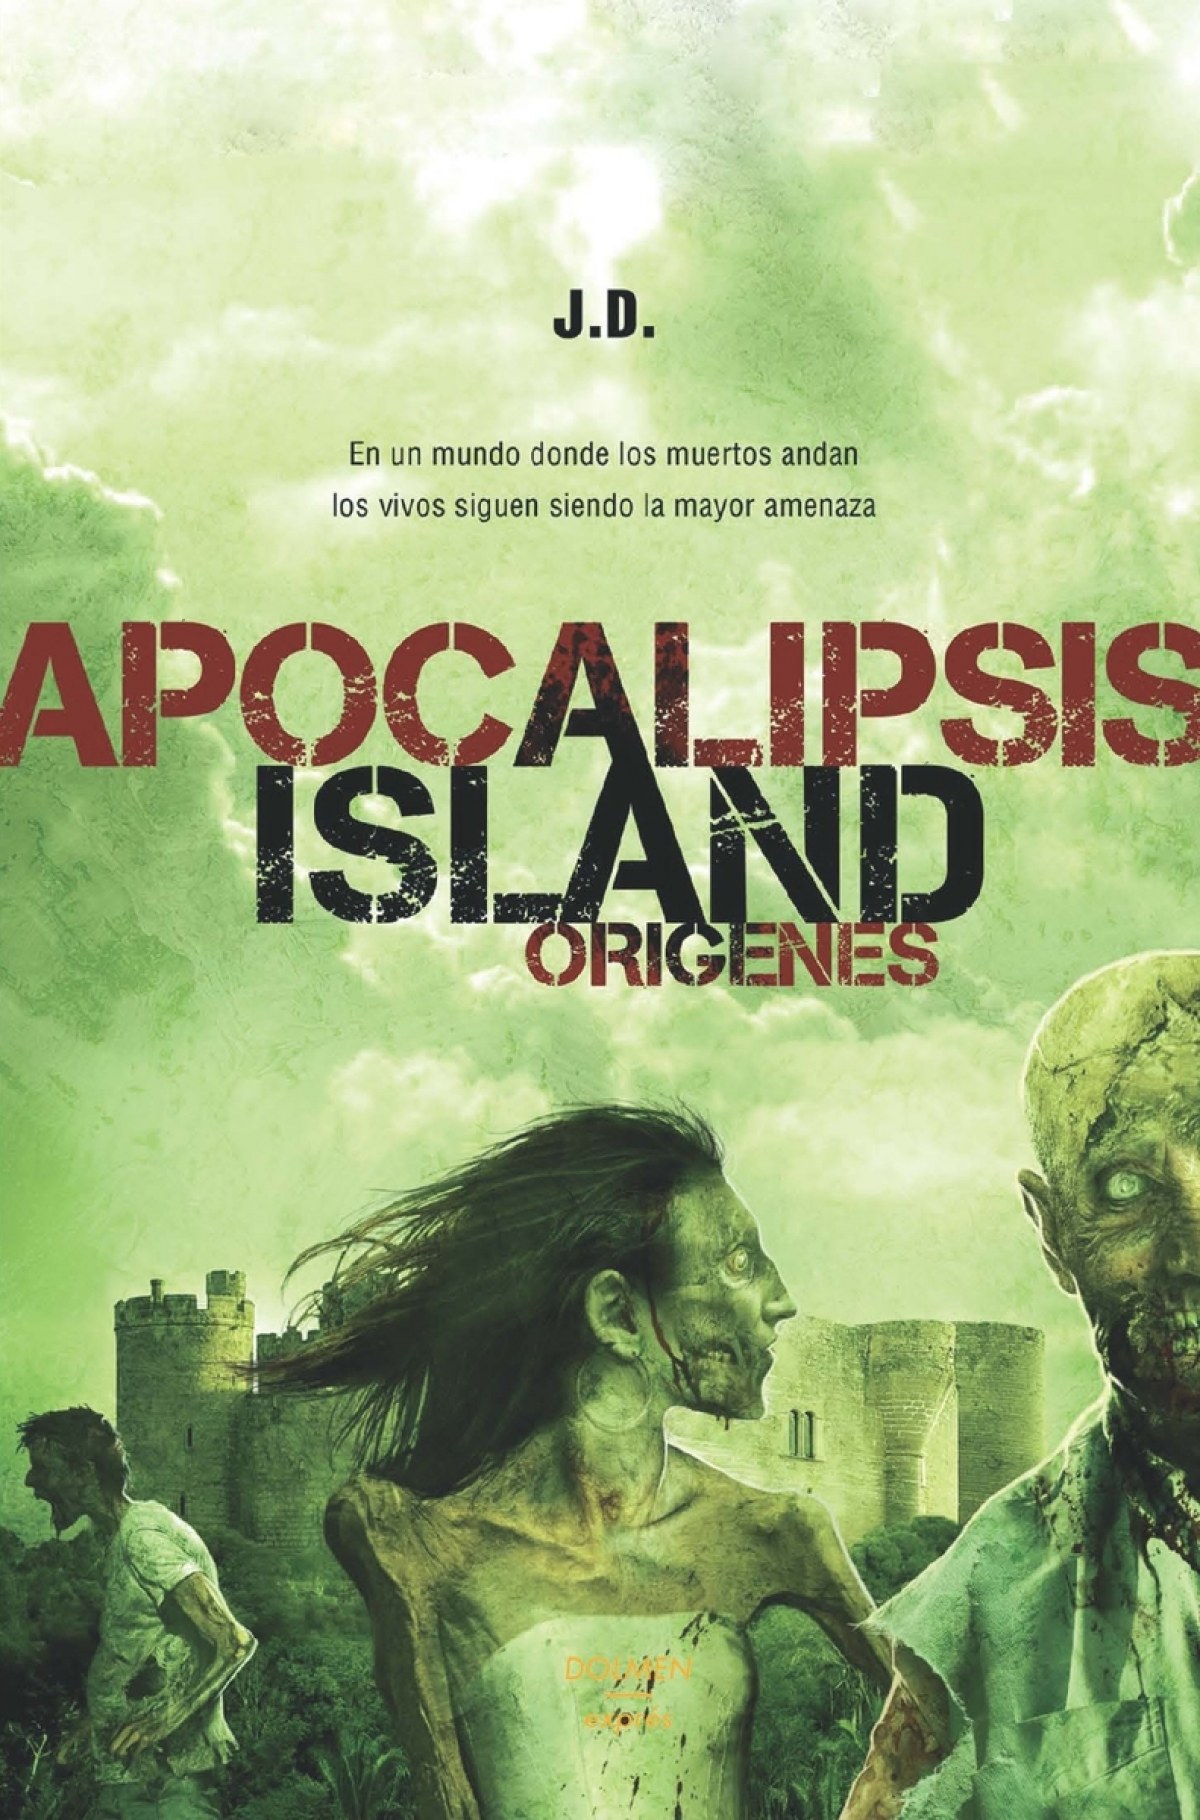 Apocalipsis island origenes - Jd